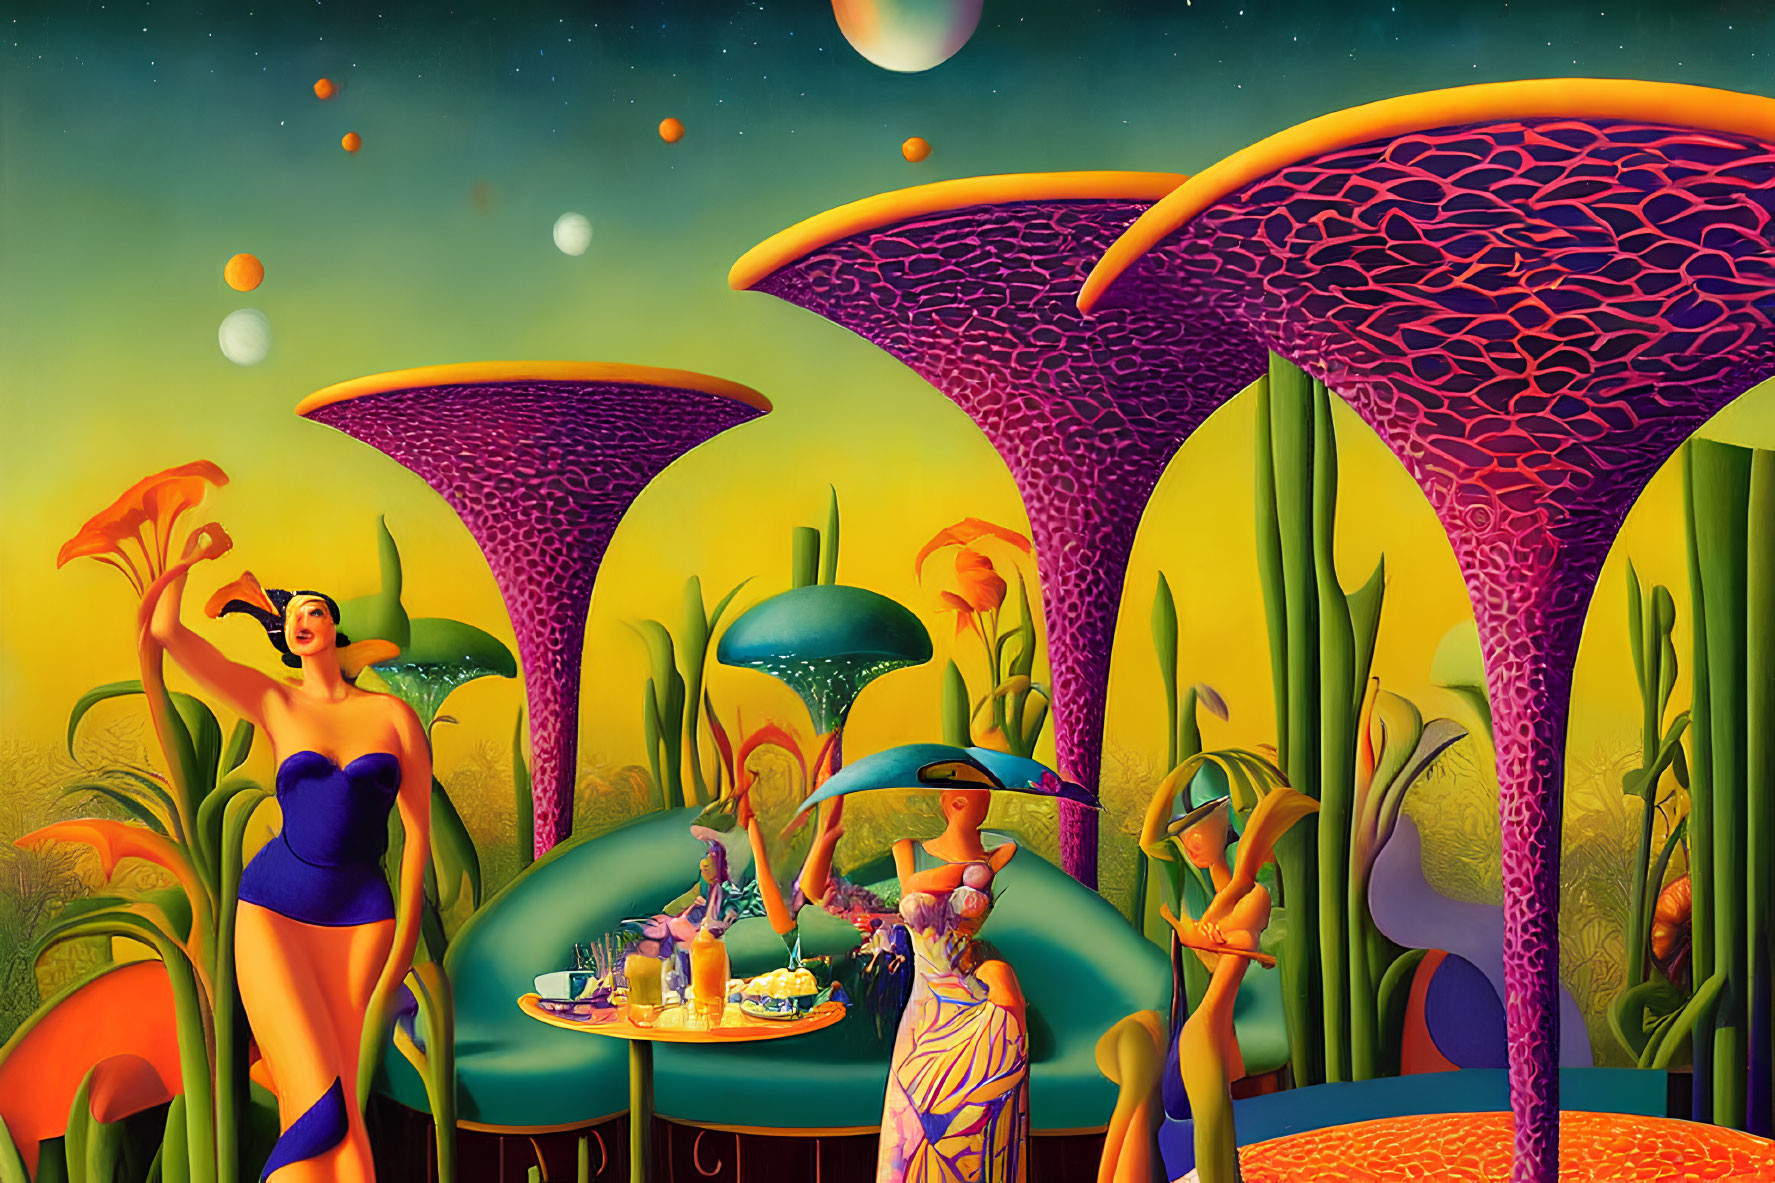 Surreal landscape with elegantly dressed figures and fantastical mushroom structures